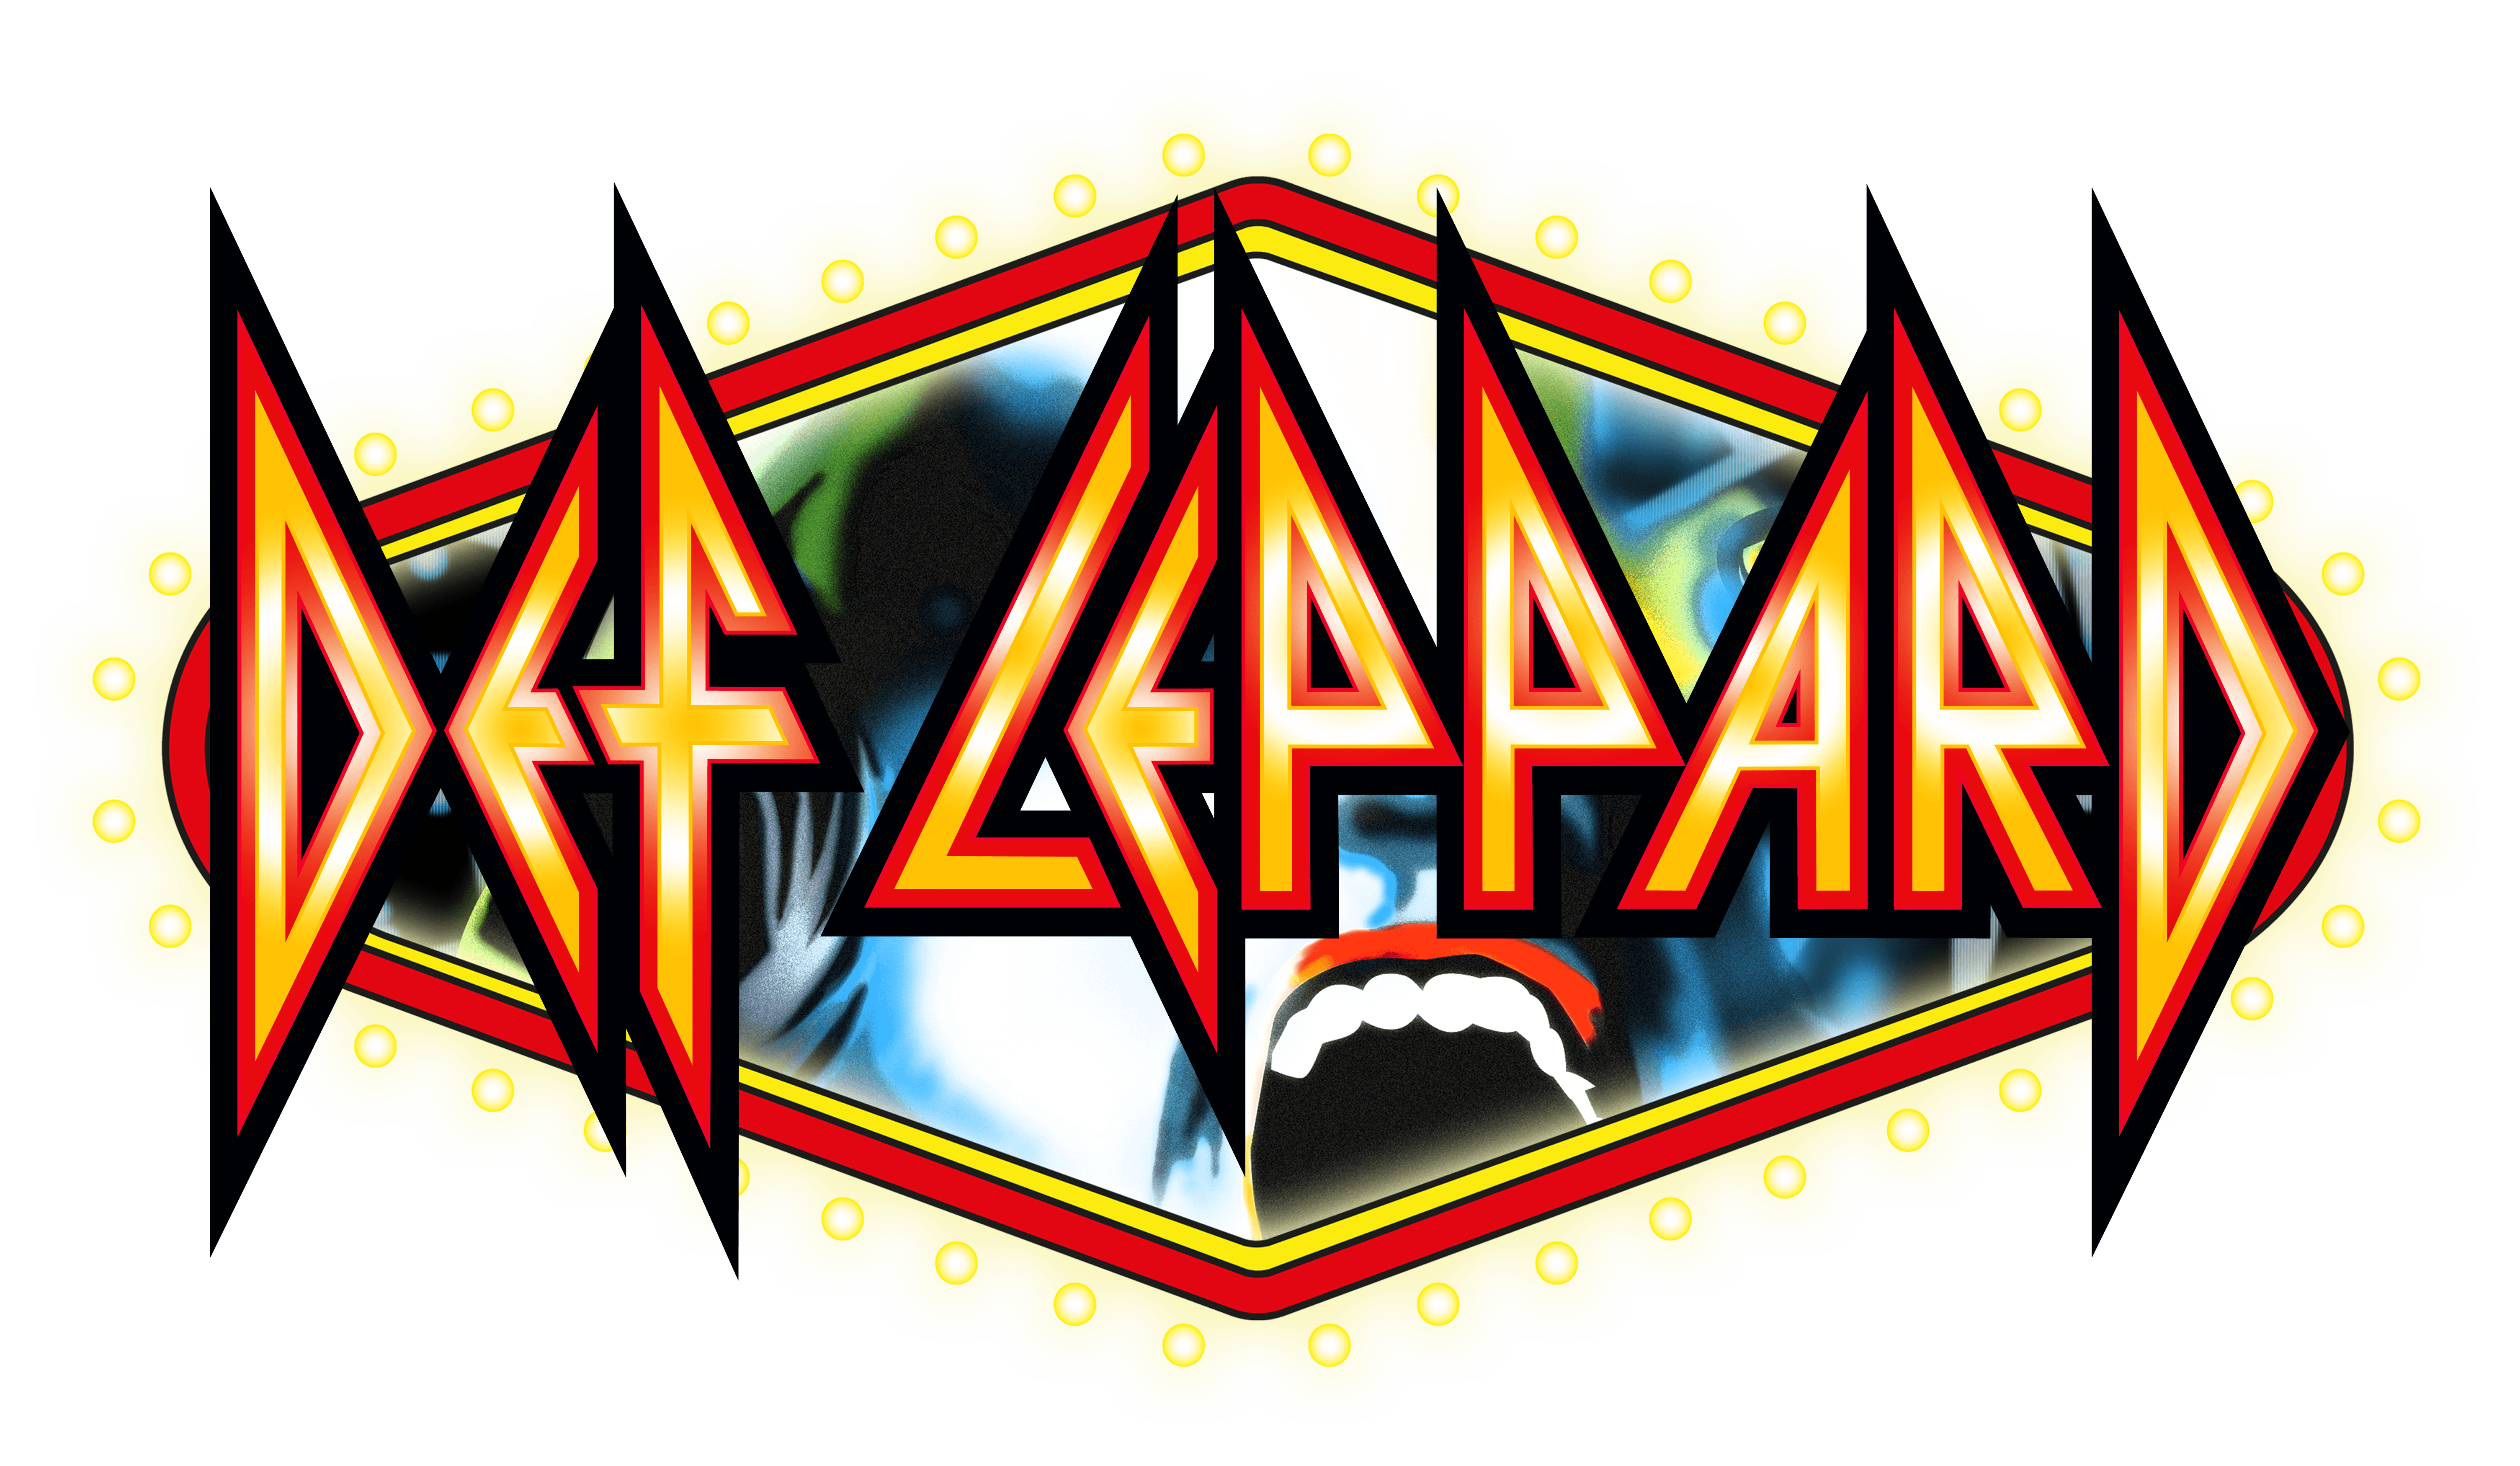 Def Leppard Band Logo - Def Leppard | Viva Hysteria